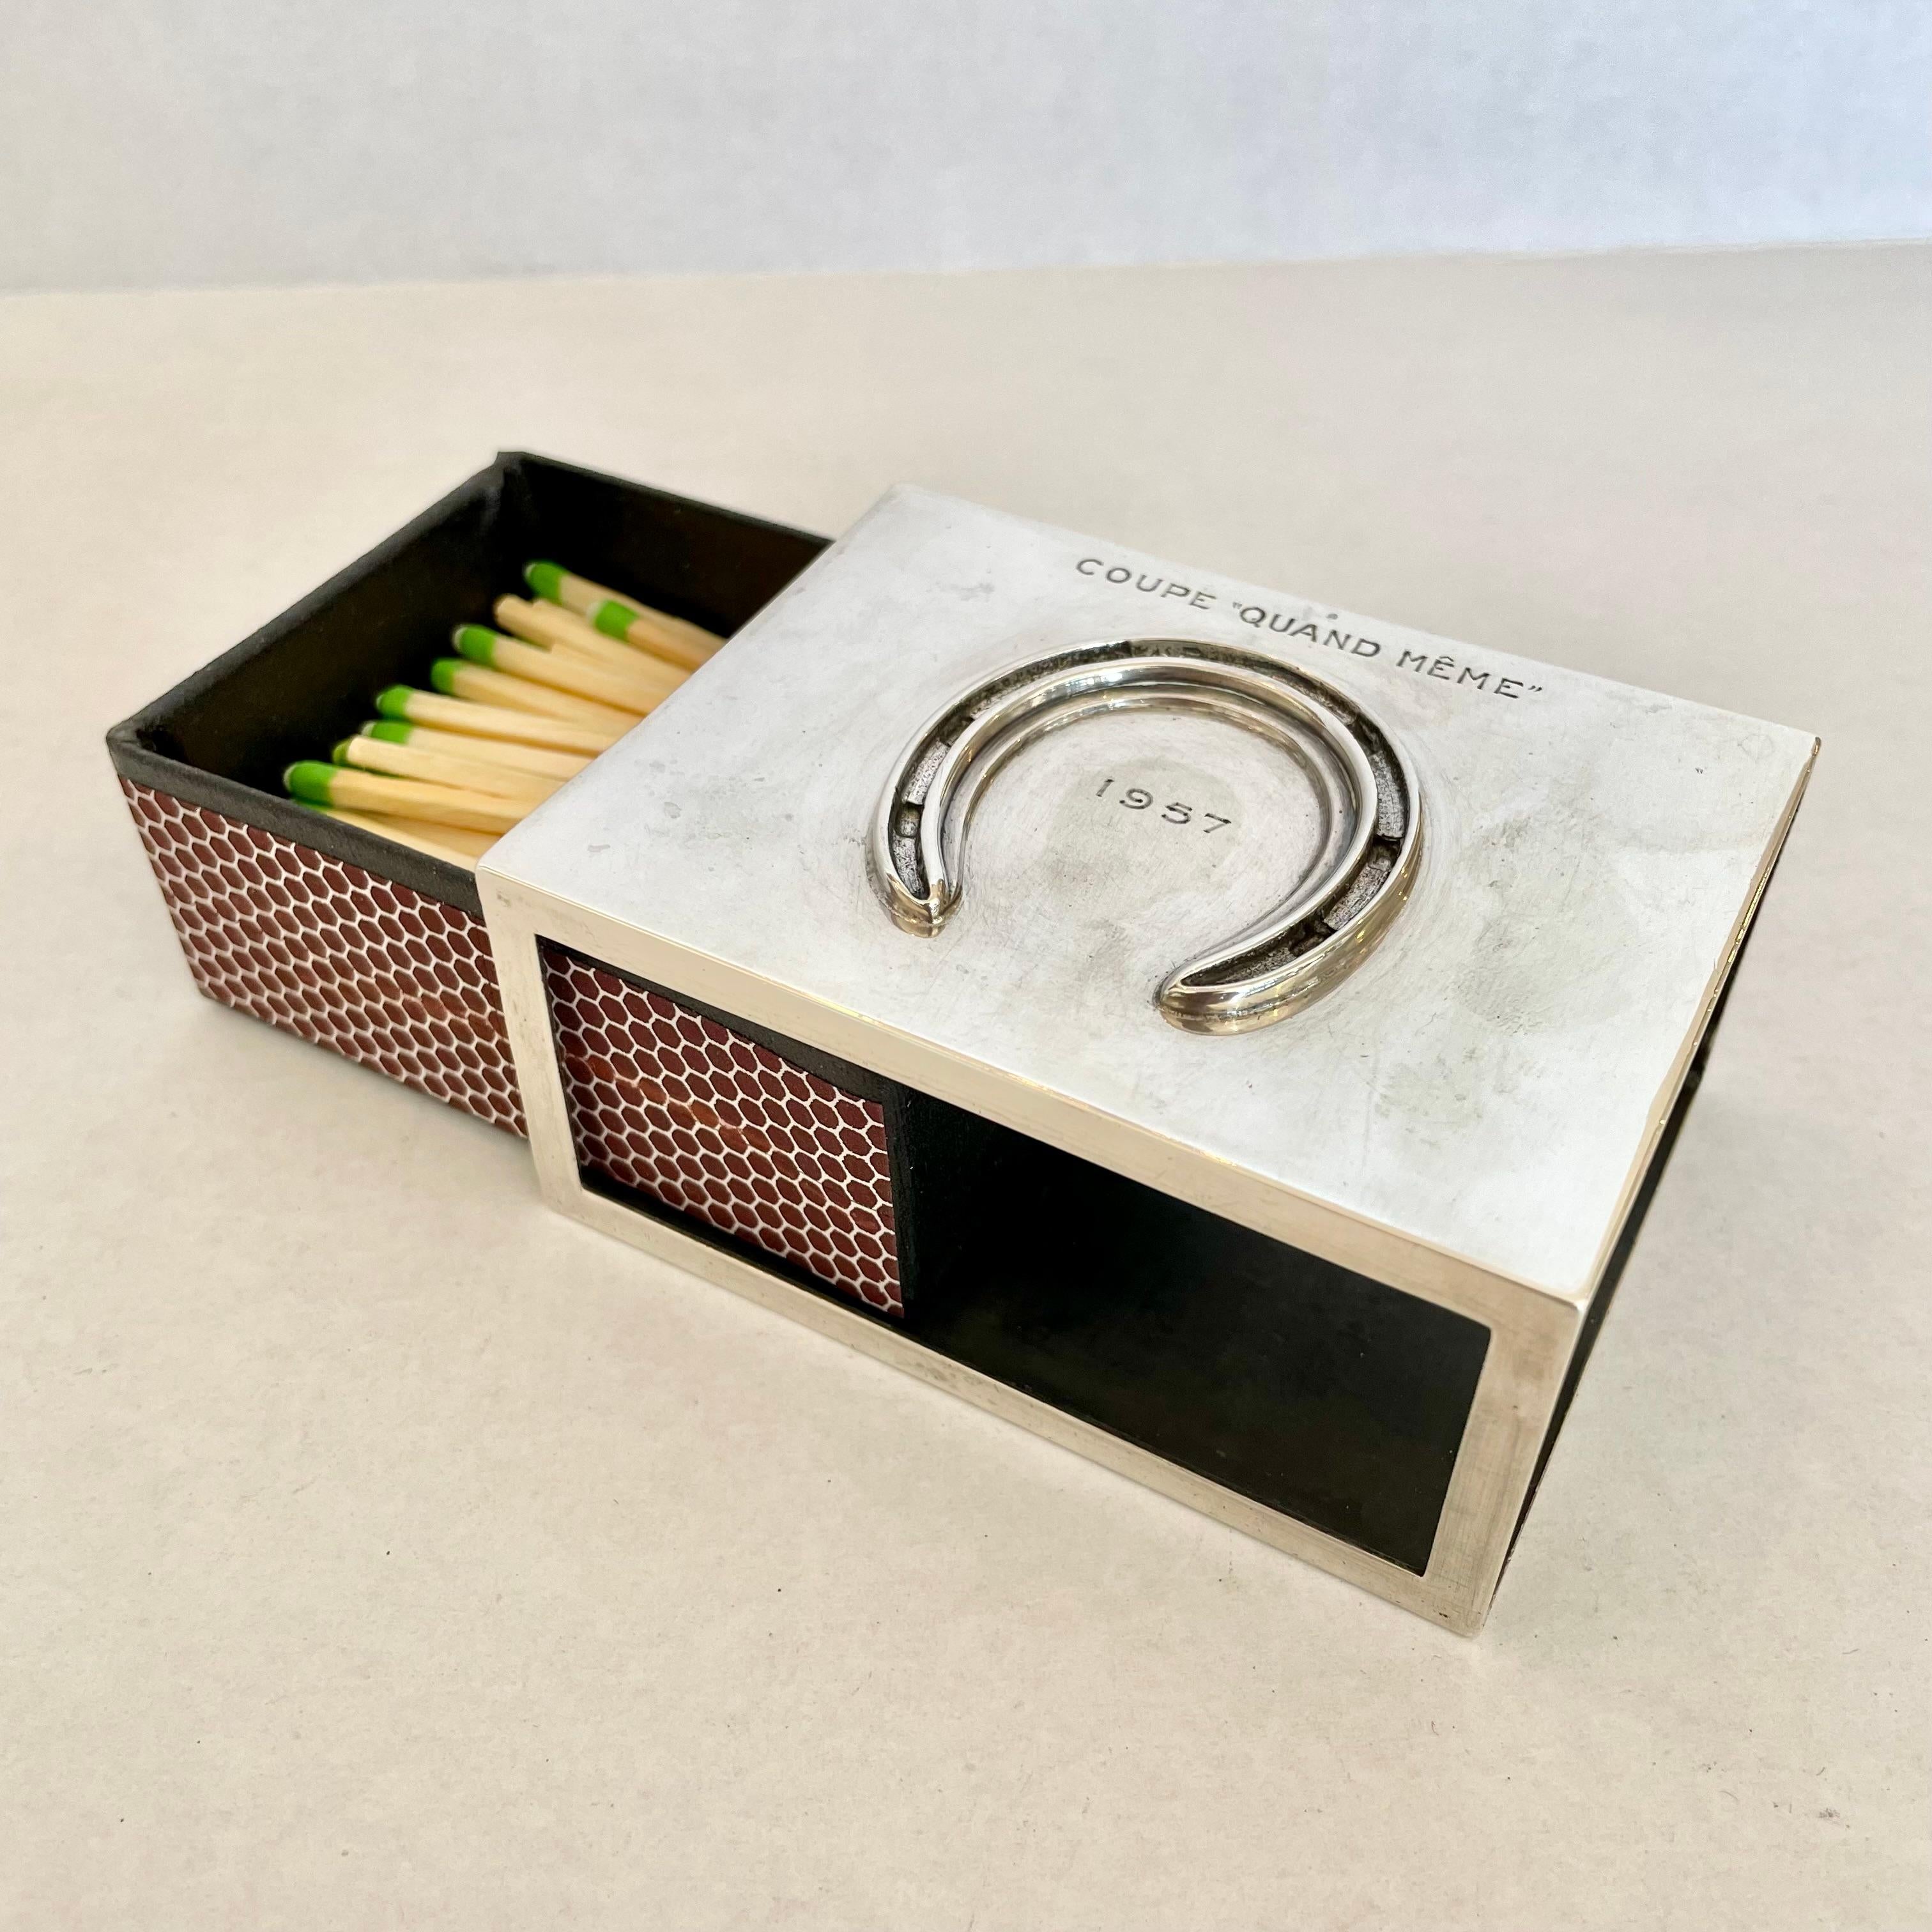 Klassische Hermès-Streichholzschachtel im Vintage-Stil. Matchbox hat eine Metallhülse mit einem Hufeisenabzeichen. Eingesetzte Lederbox, die in die Metallhülse passt. Gravur Hermes Paris auf dem Boden der Streichholzschachtel. Ein wunderschönes